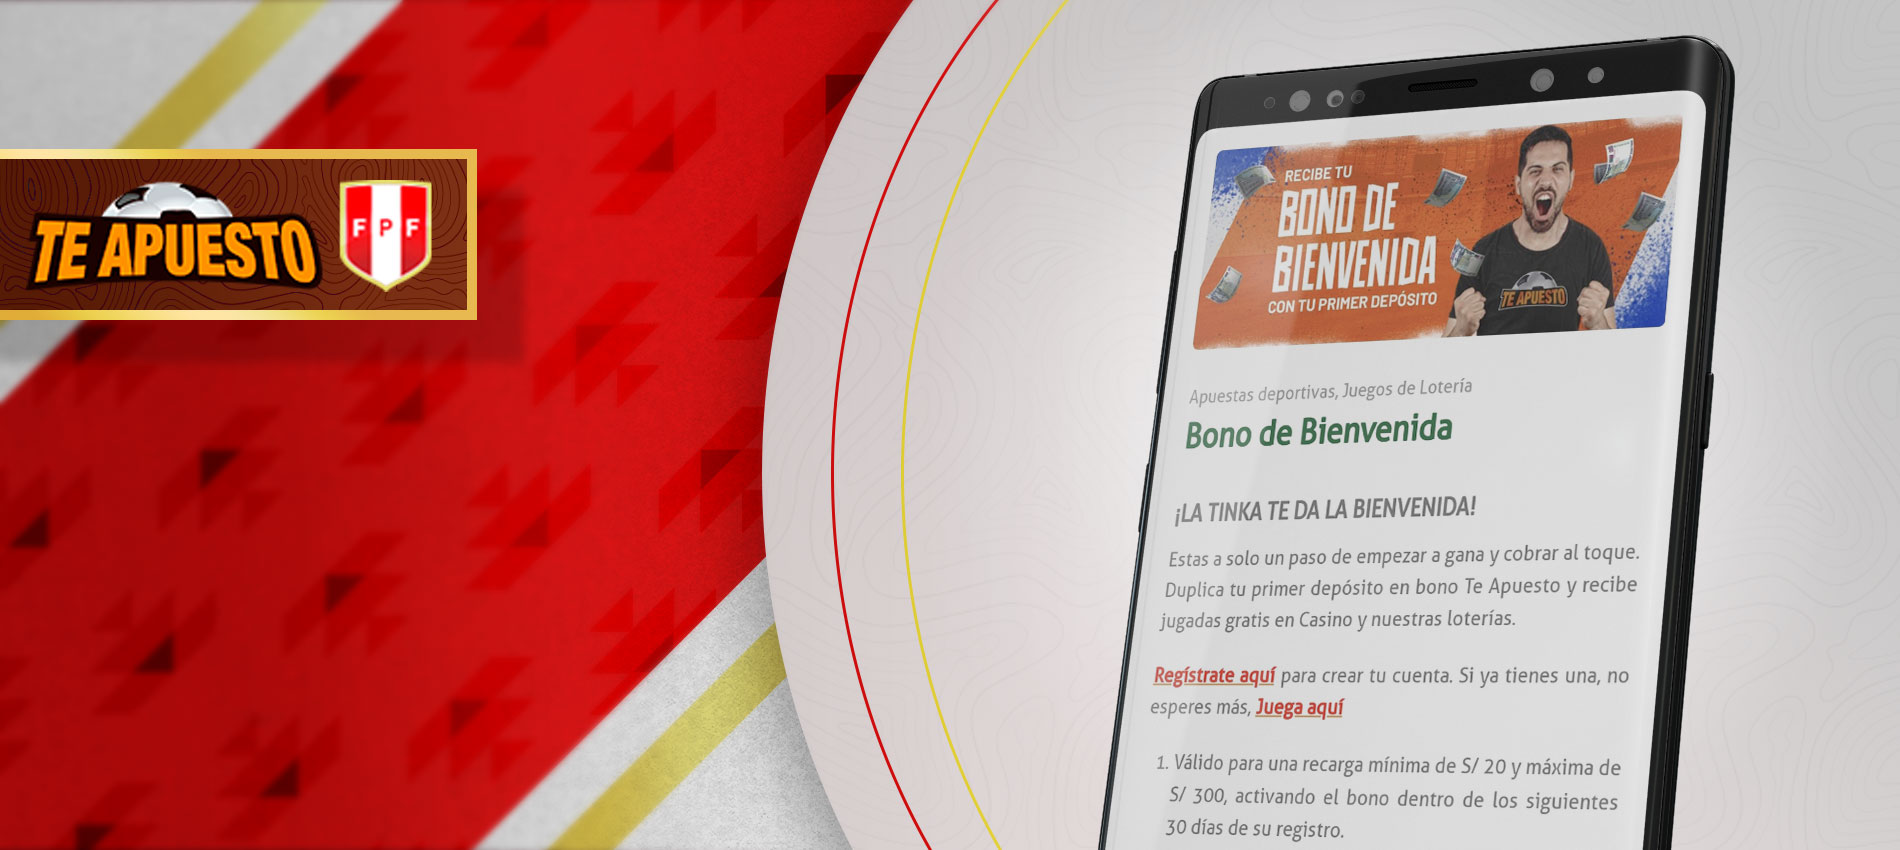 Te Apuesto es una de las mejores casas de apuestas para los jugadores peruanos según la versión de goapp.app4citizens.